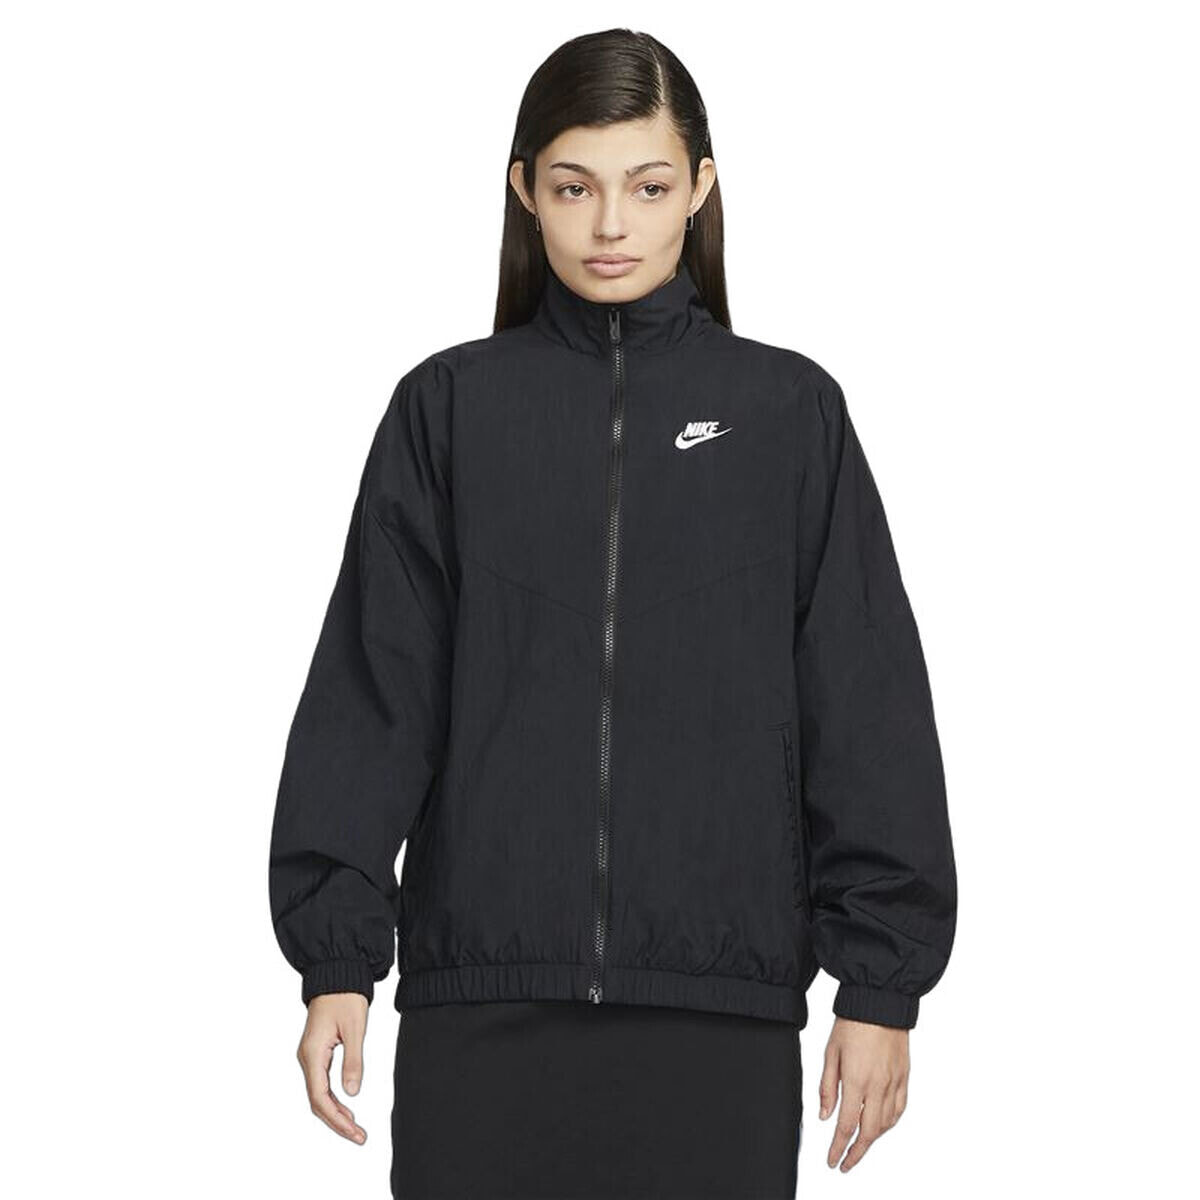 Windcheater Jacket Nike Sportswear Essential Windrunner Lady Black